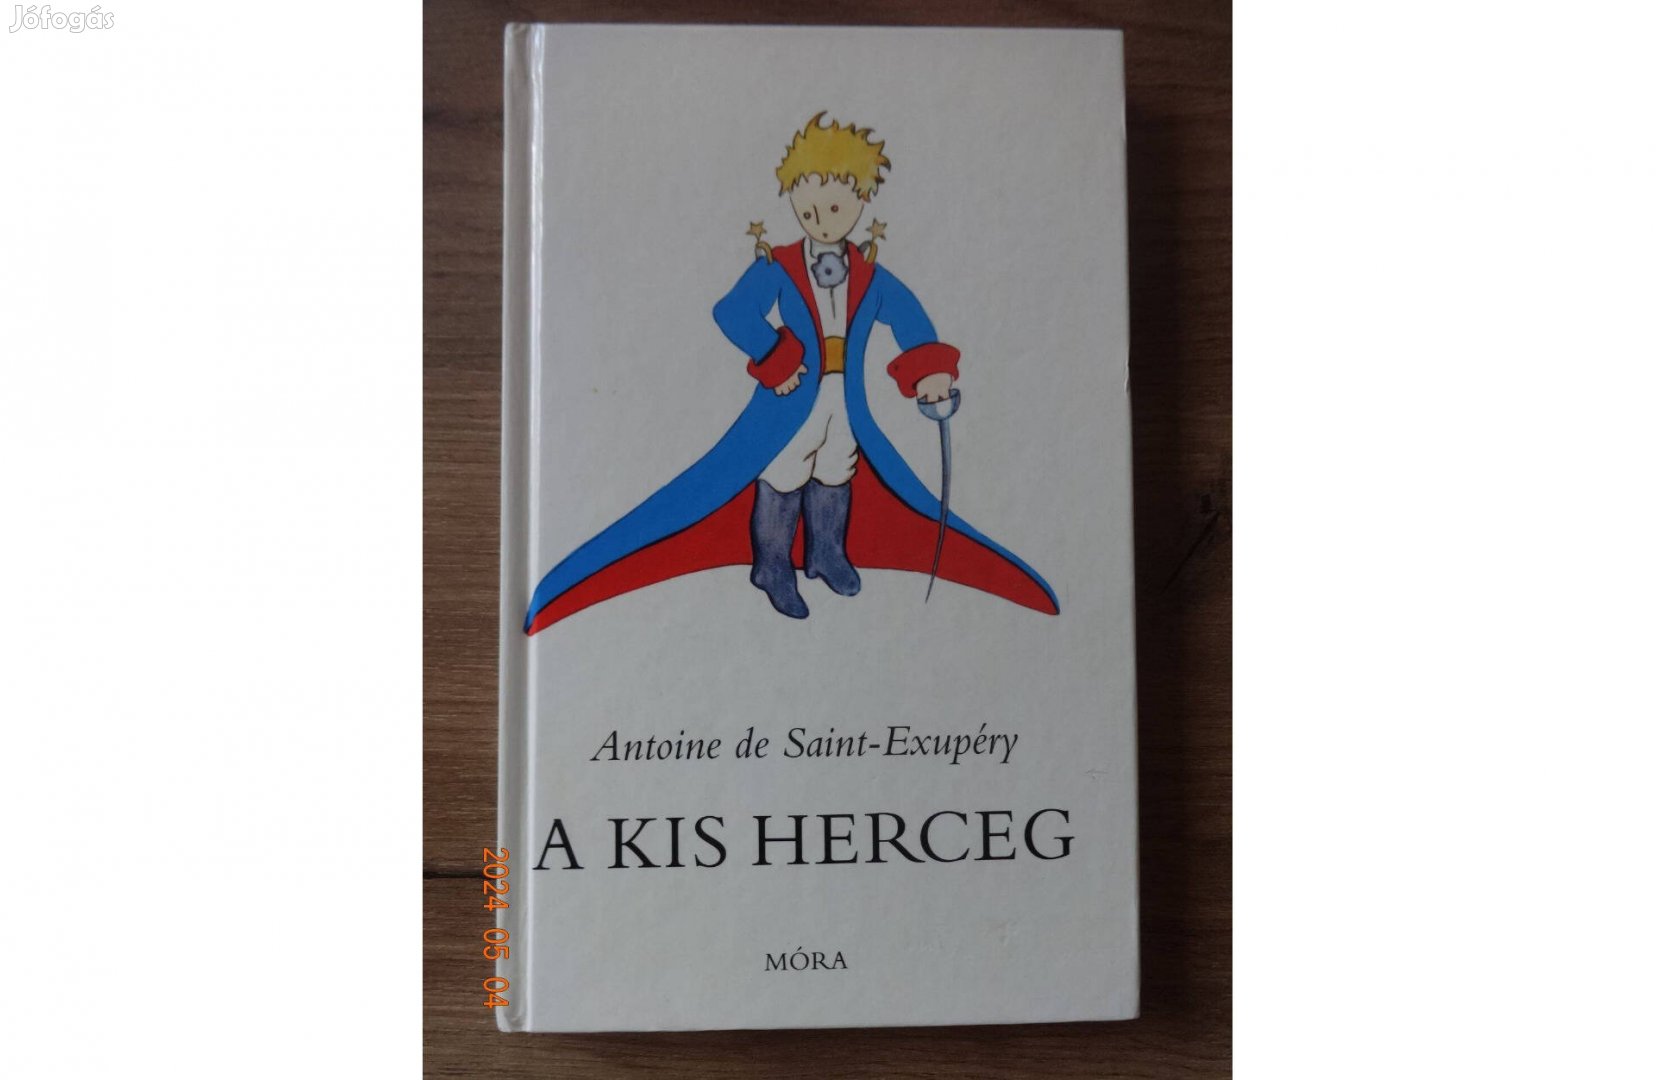 Antoine de Saint-Exupery: A kis herceg - mesekönyv a szerző rajzaival